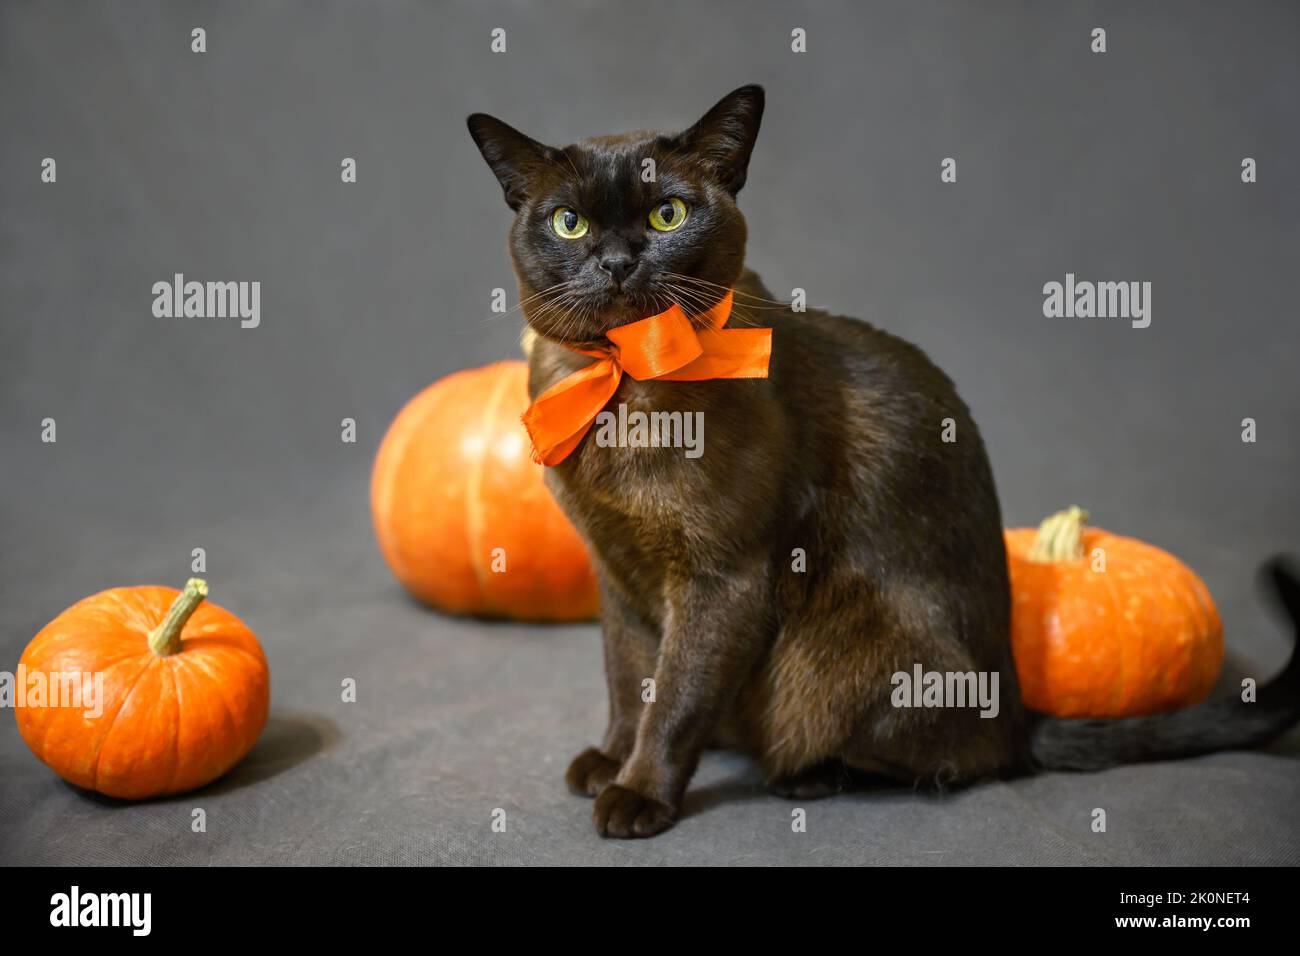 Chat birman sur Halloween, portrait de chat birman brun avec ruban d'orange et citrouilles, animal mignon assis sur fond gris dans les vacances d'Halloween en studio Banque D'Images